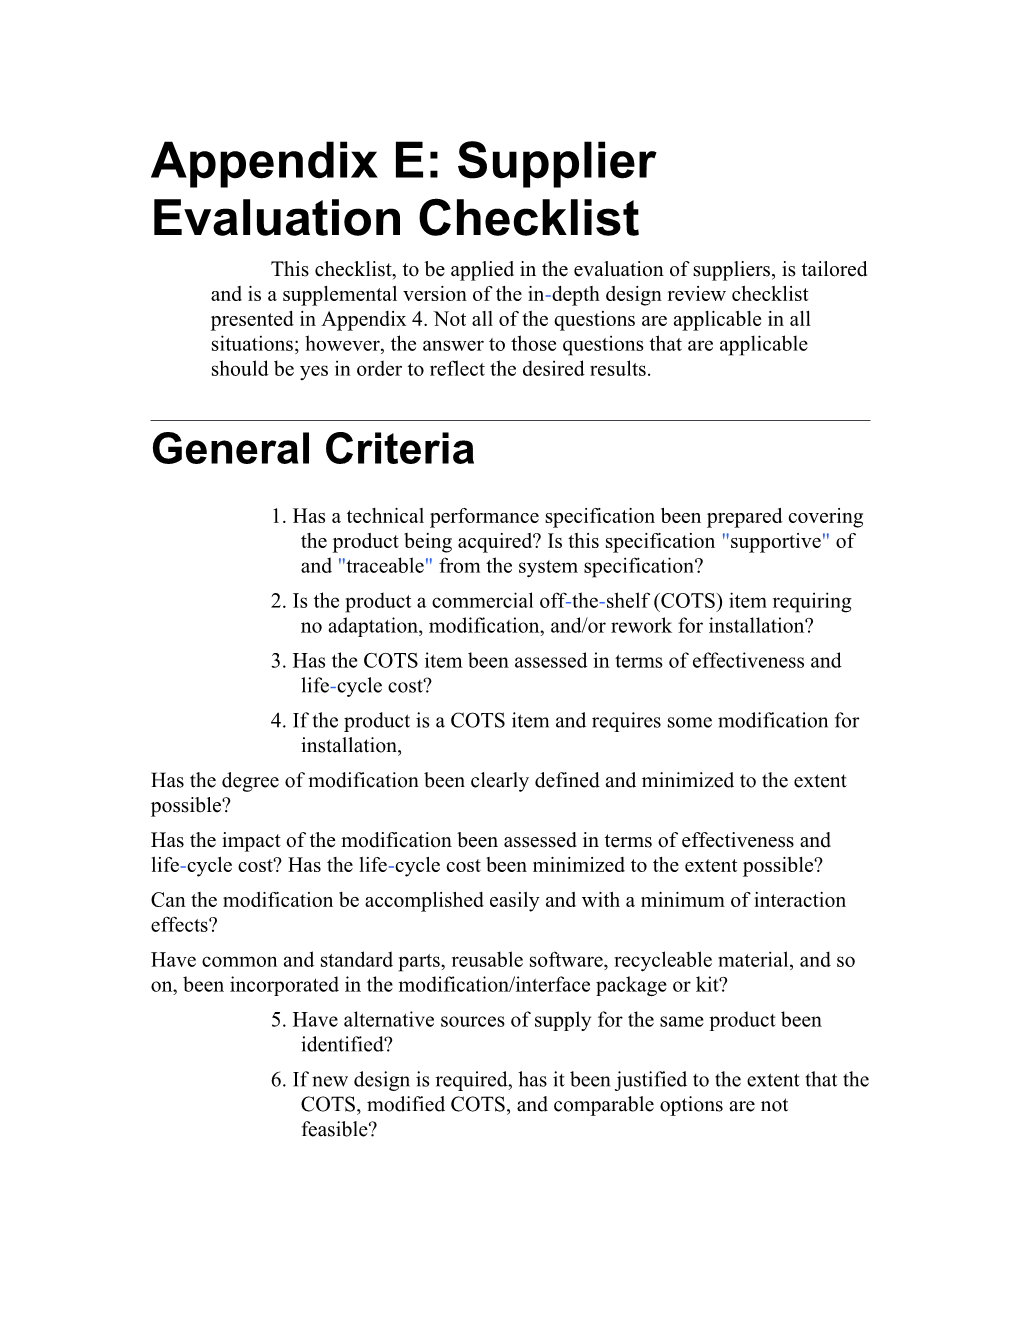 Appendix E: Supplier Evaluation Checklist